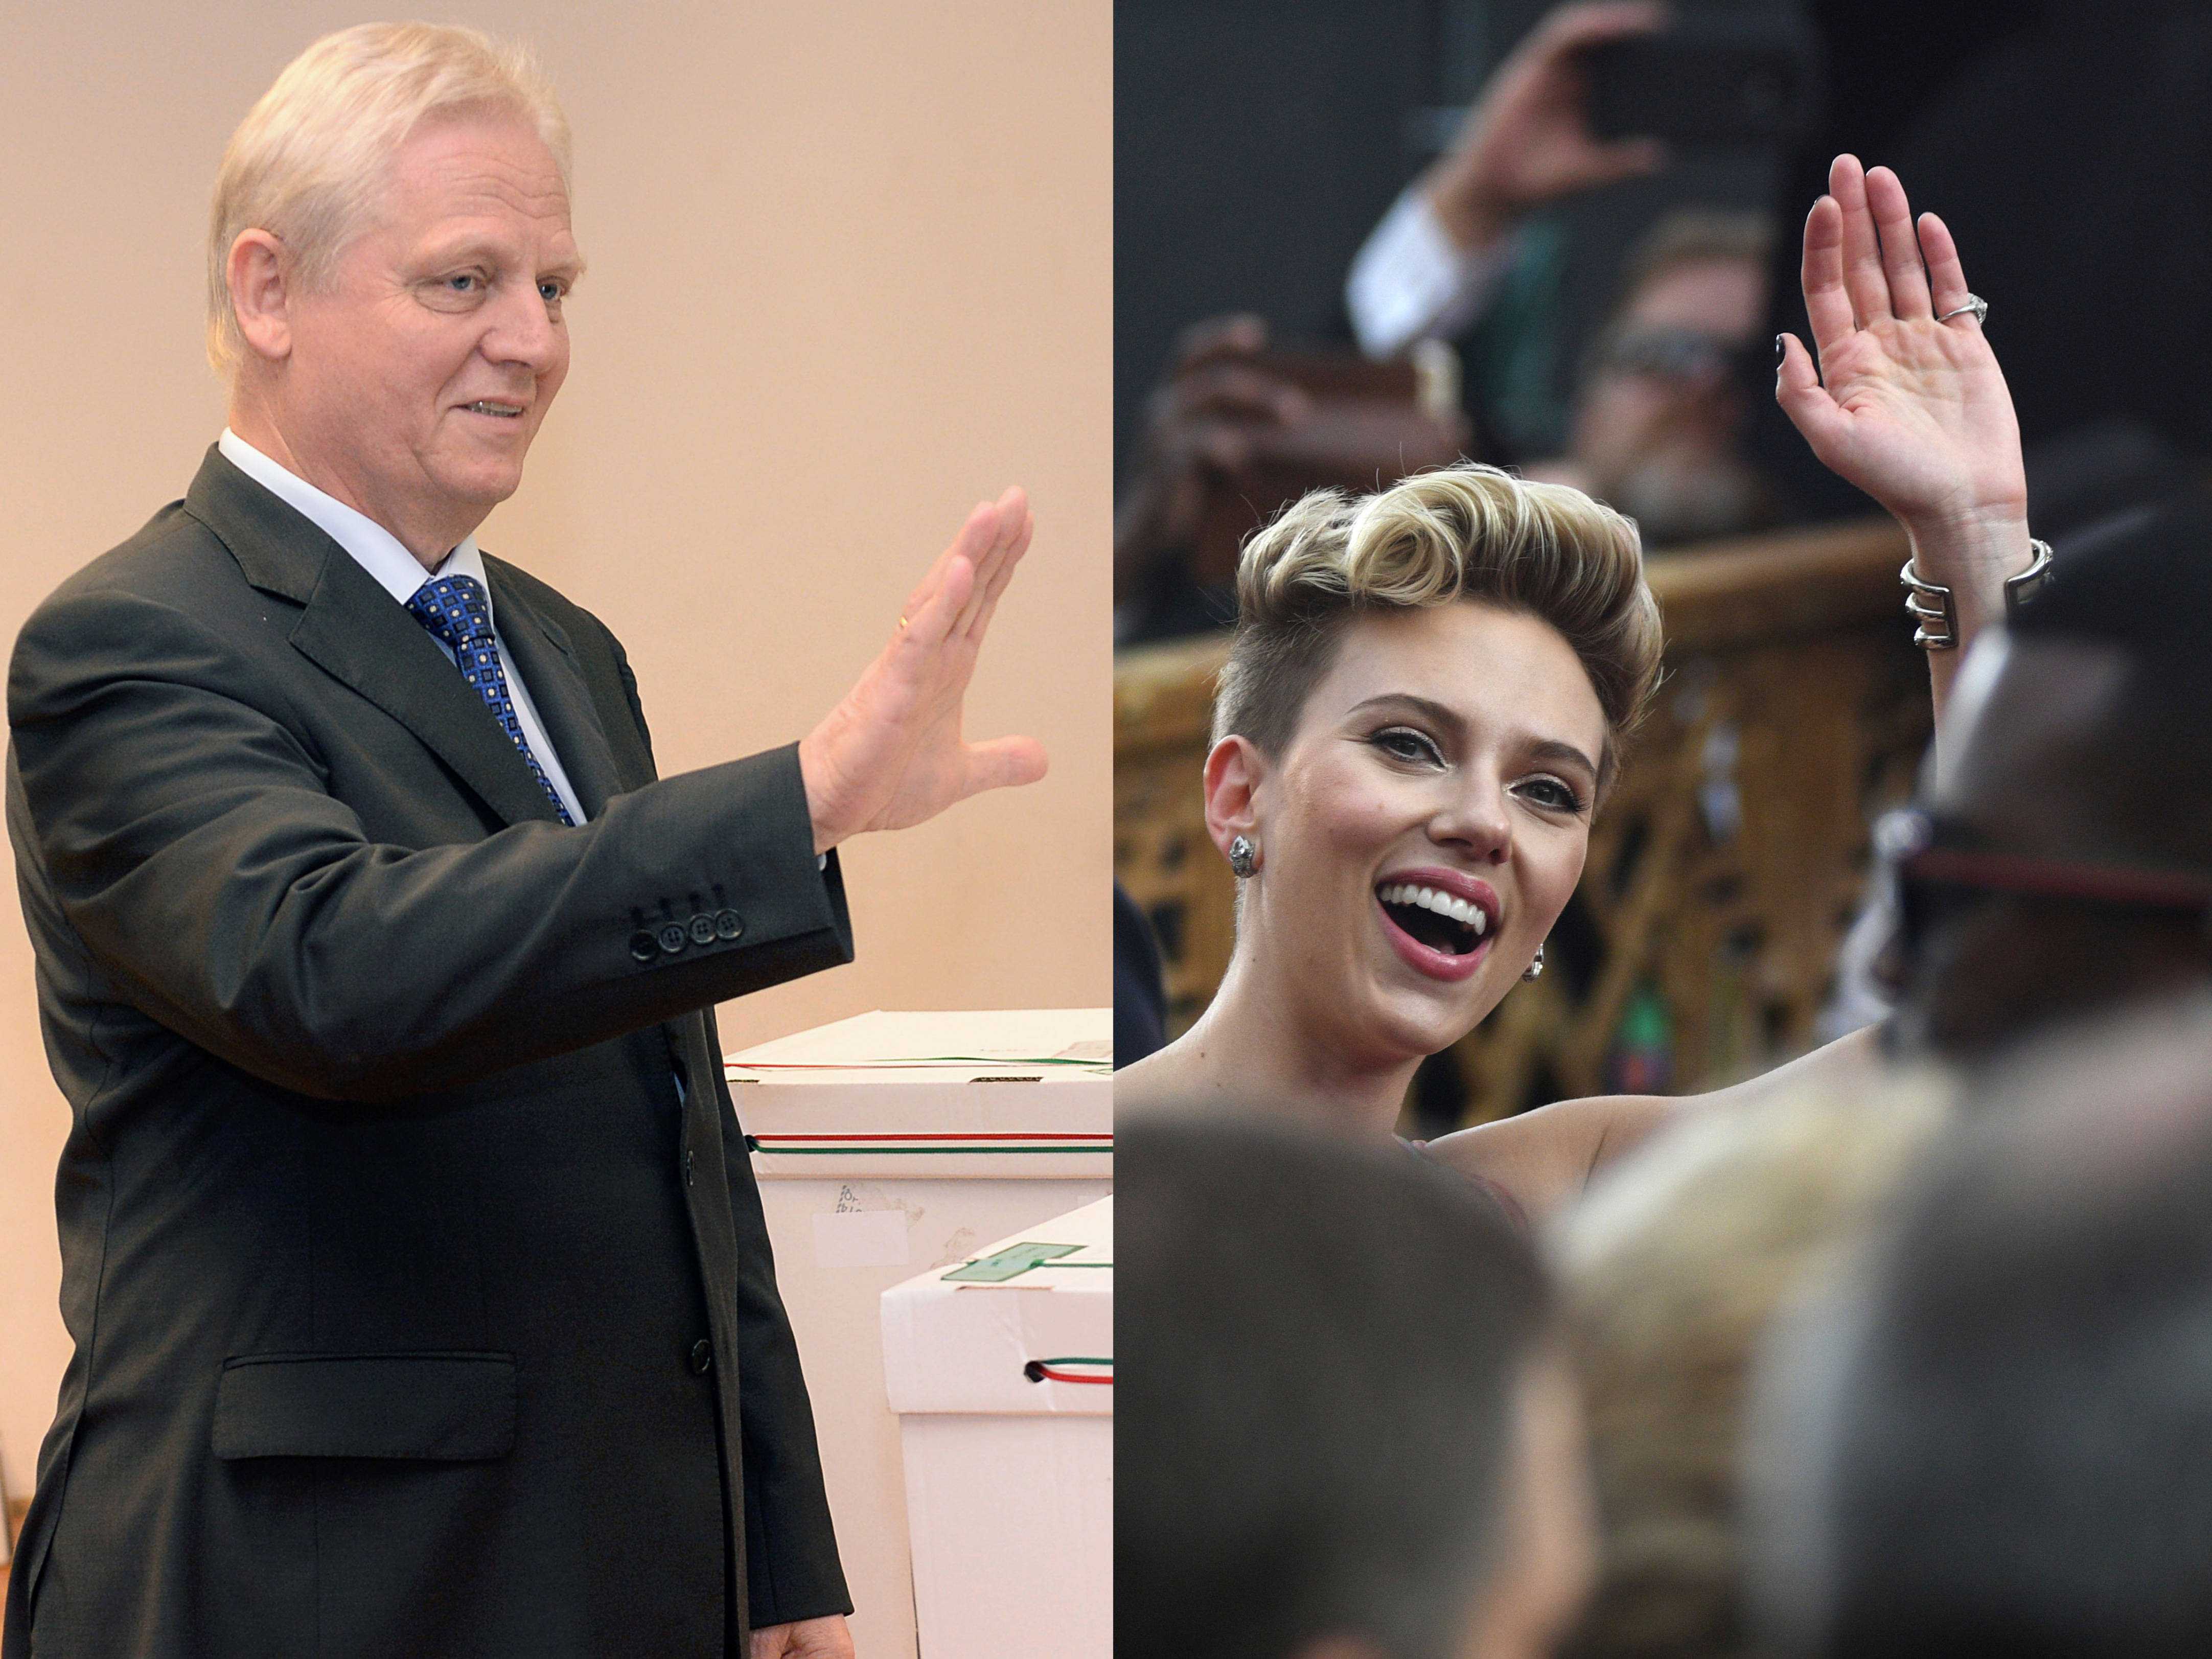 Scarlett Johansson meglátogatta Tarlós Istvánt, és elismerően nyilatkozott városvezetési képességeiről